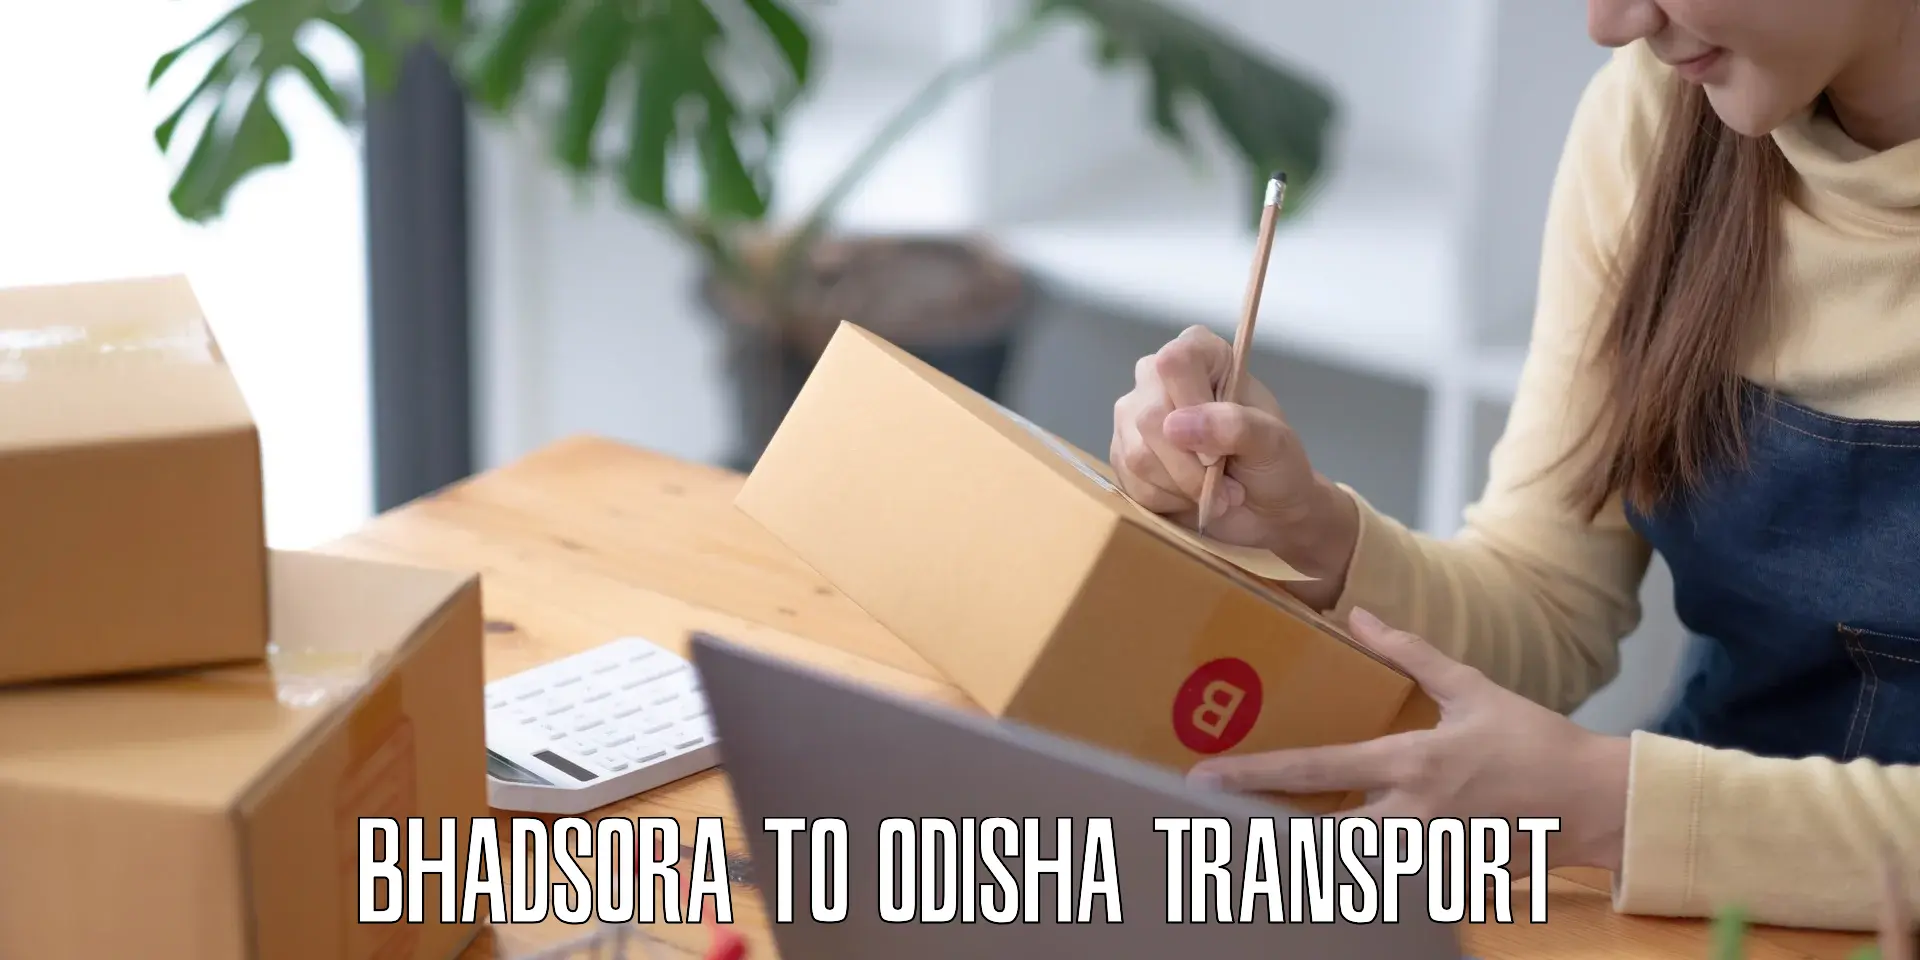 Daily transport service Bhadsora to Odisha